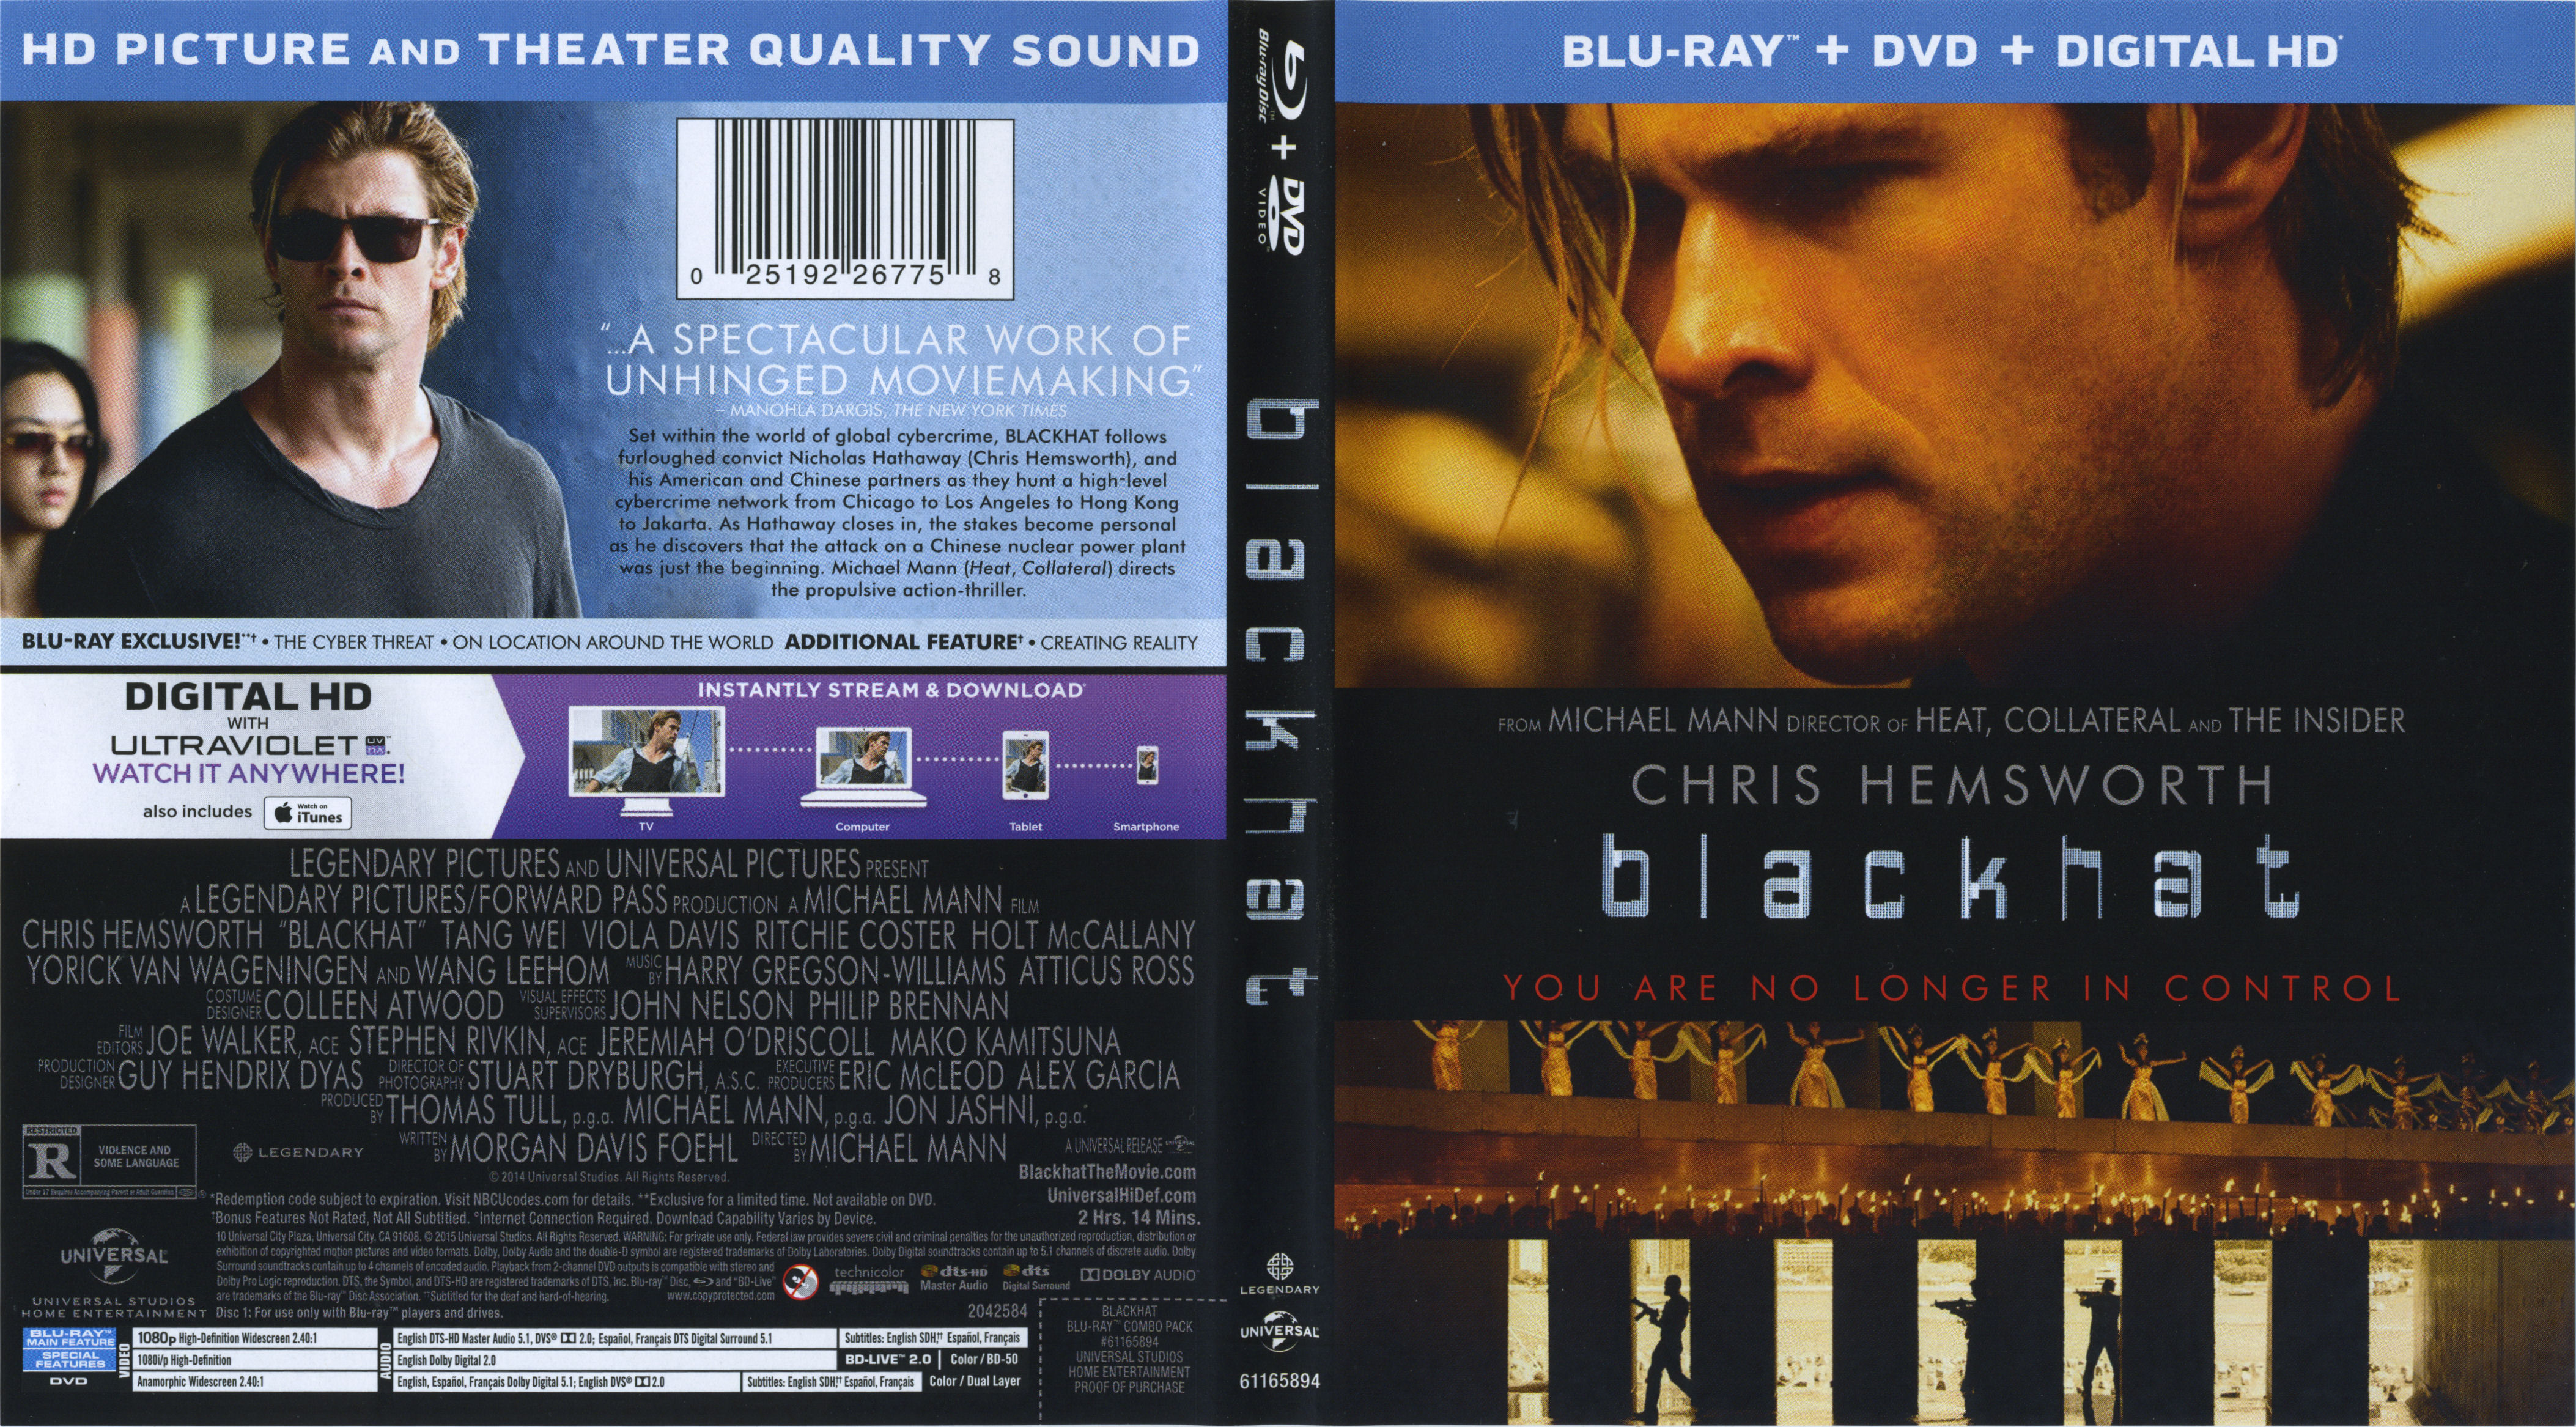 Jaquette DVD Hacker - Blackhat Zone 1 (BLU-RAY)